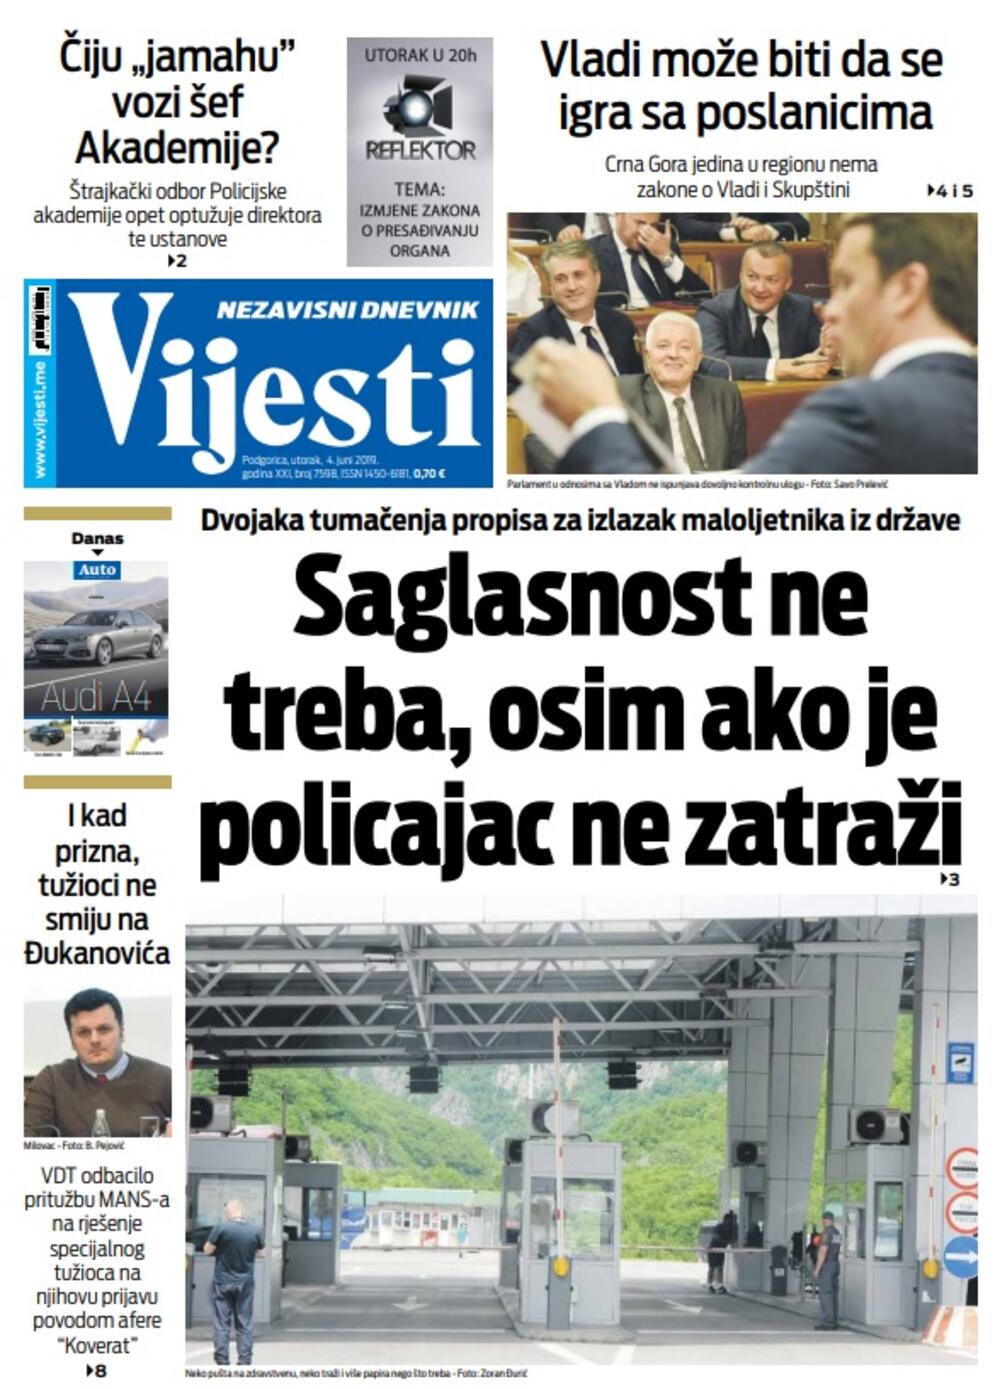 Naslovna strana "Vijesti" za 4.jun, Foto: Vijesti